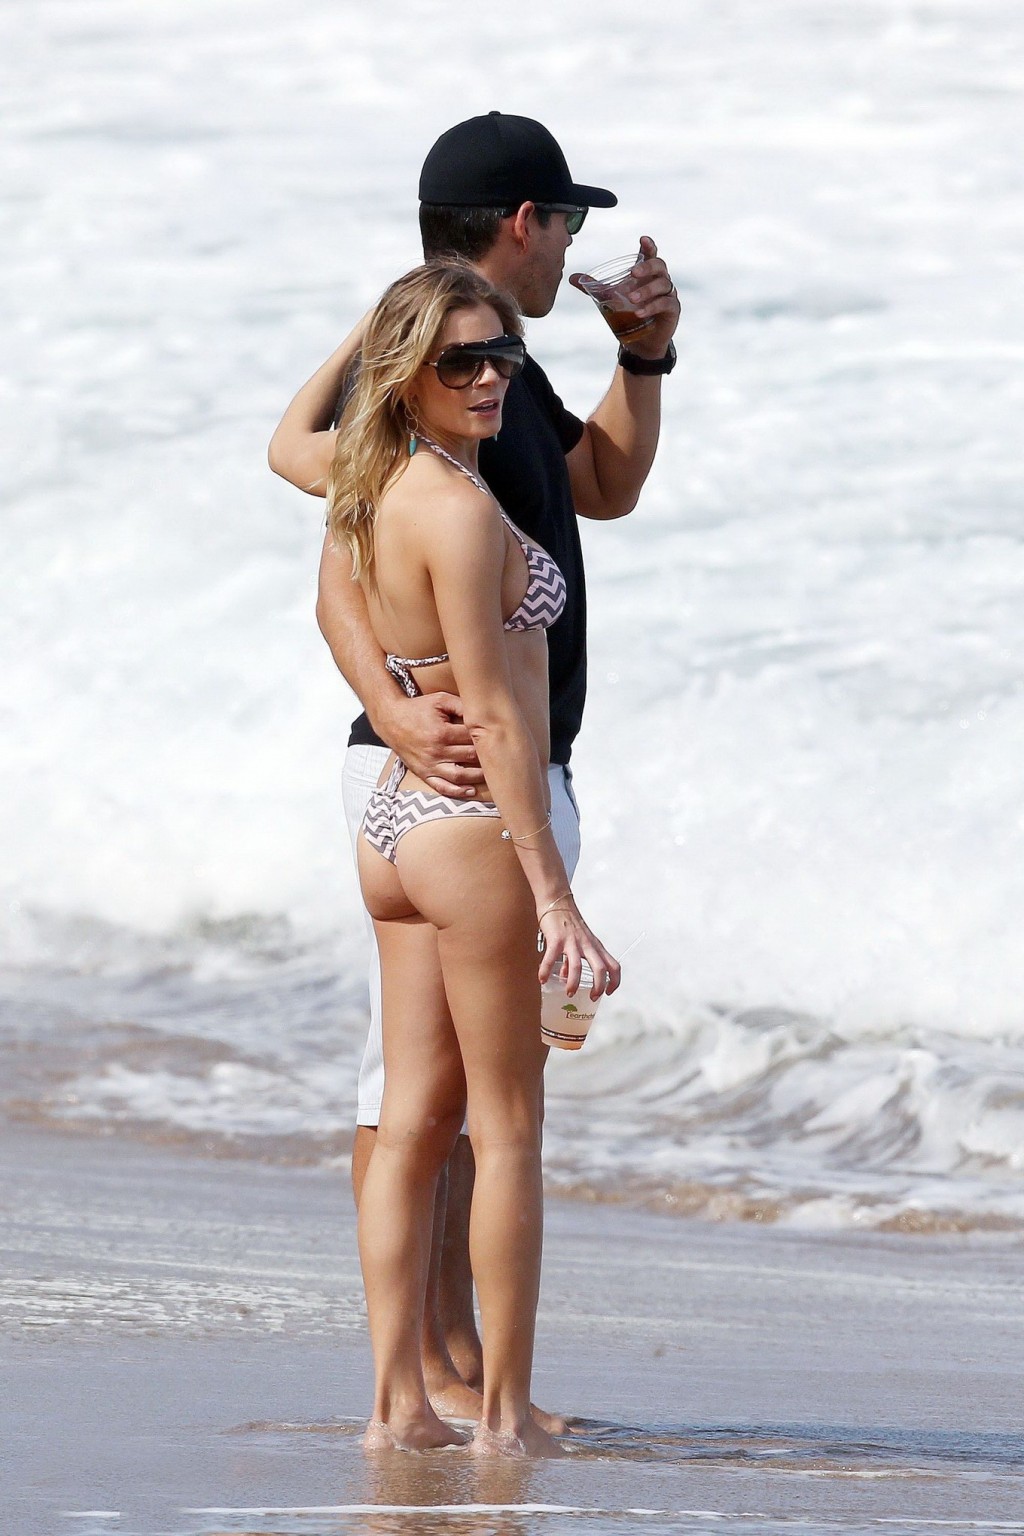 Leann rimes en bikini acariciando con su marido en una playa de hawaii
 #75276950